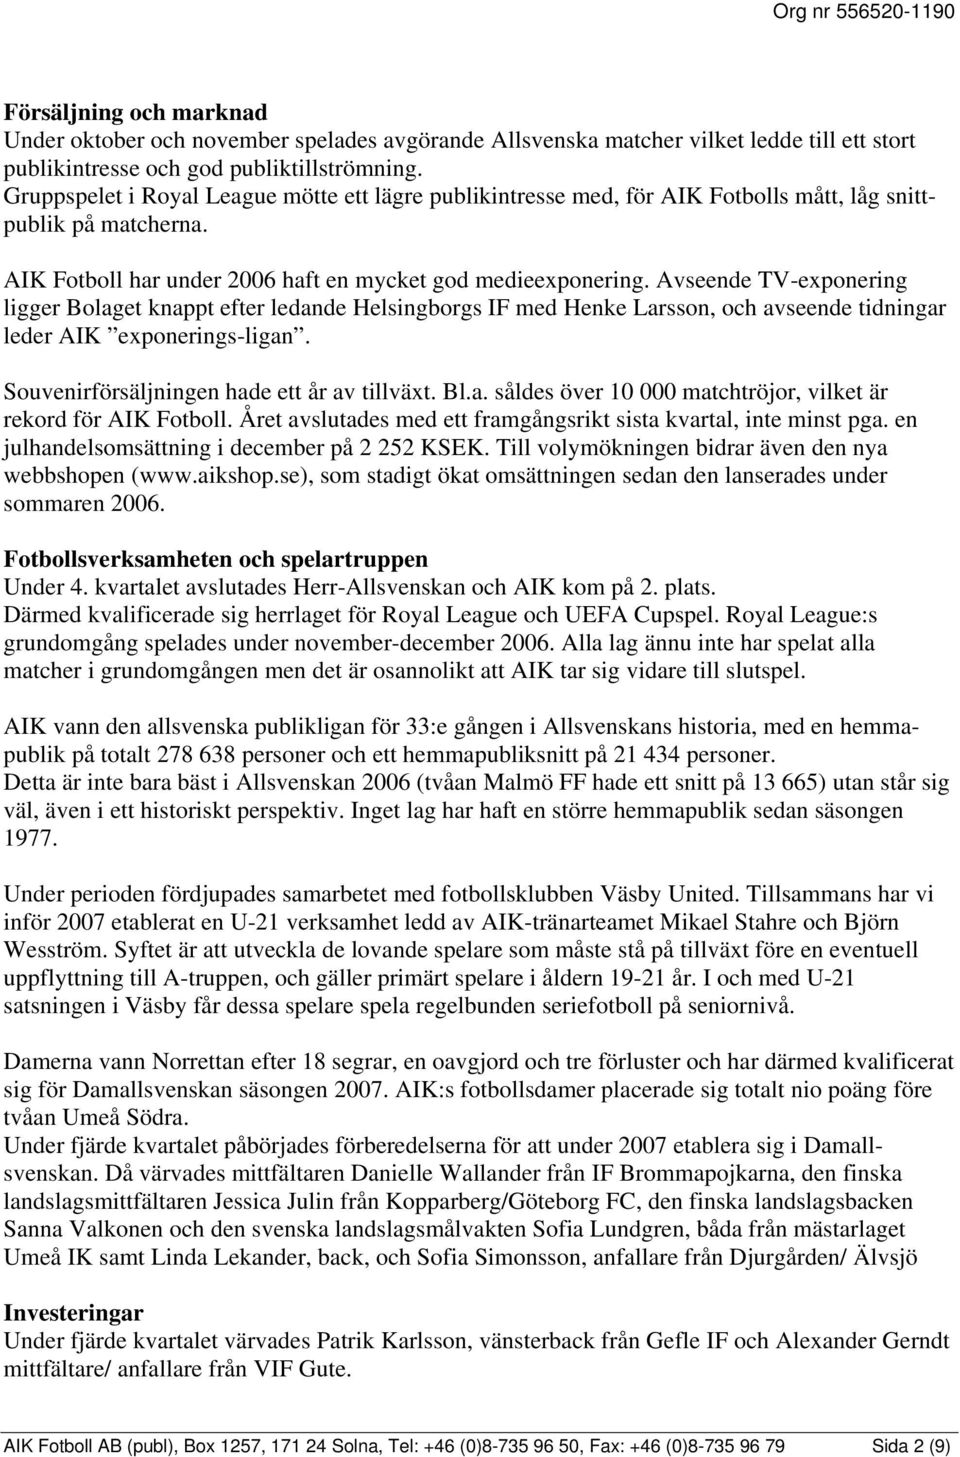 Avseende TV-exponering ligger Bolaget knappt efter ledande Helsingborgs IF med Henke Larsson, och avseende tidningar leder AIK exponerings-ligan. Souvenirförsäljningen hade ett år av tillväxt. Bl.a. såldes över 10 000 matchtröjor, vilket är rekord för AIK Fotboll.